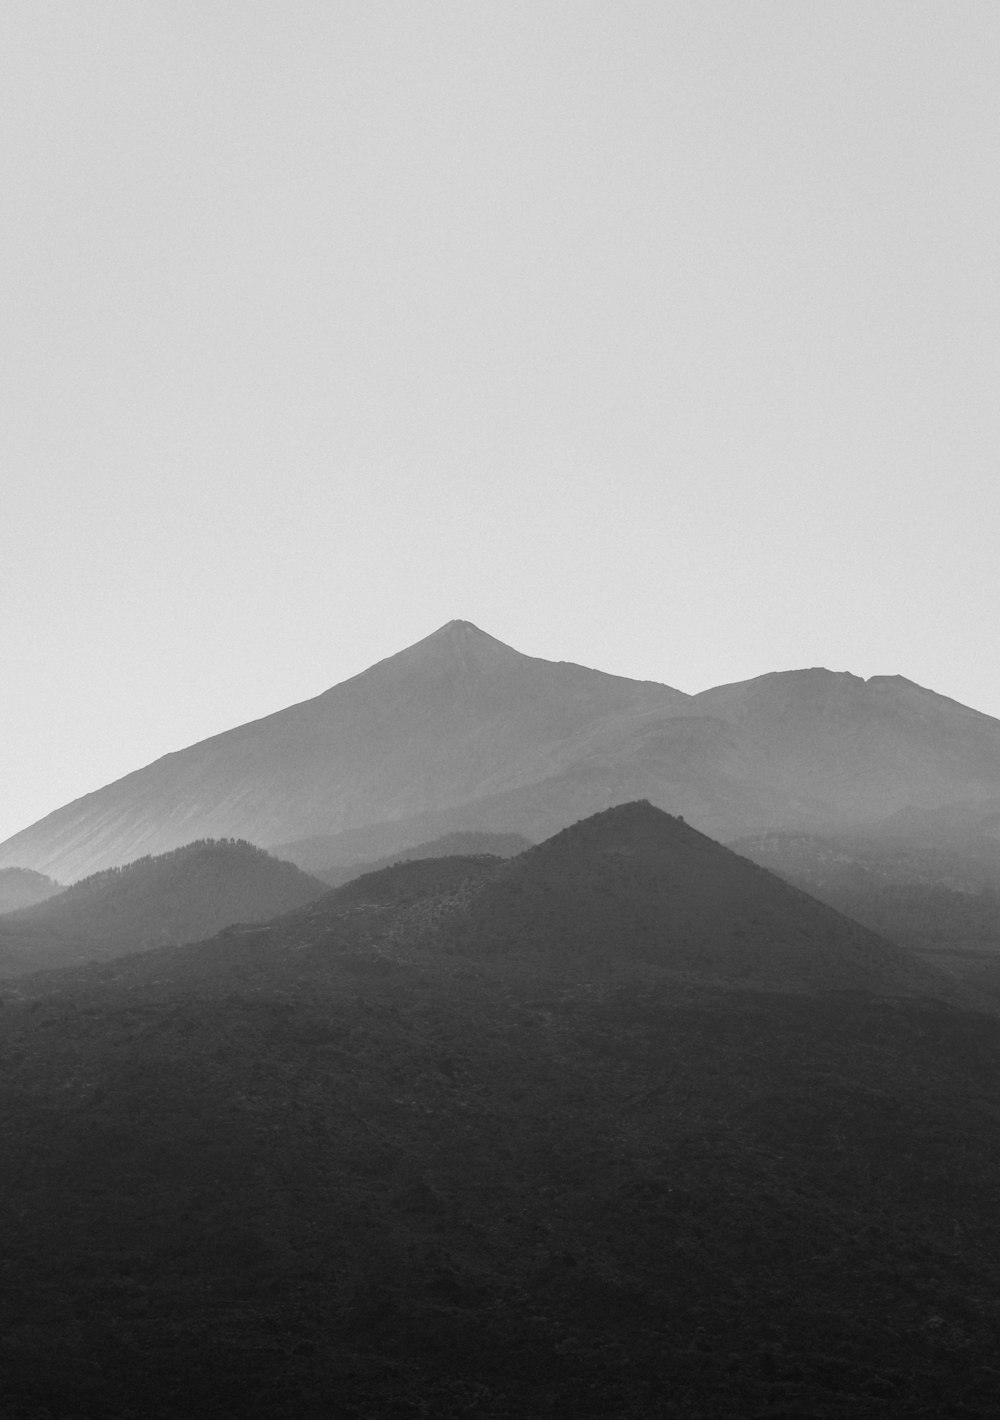 fotografia in scala di grigi delle montagne